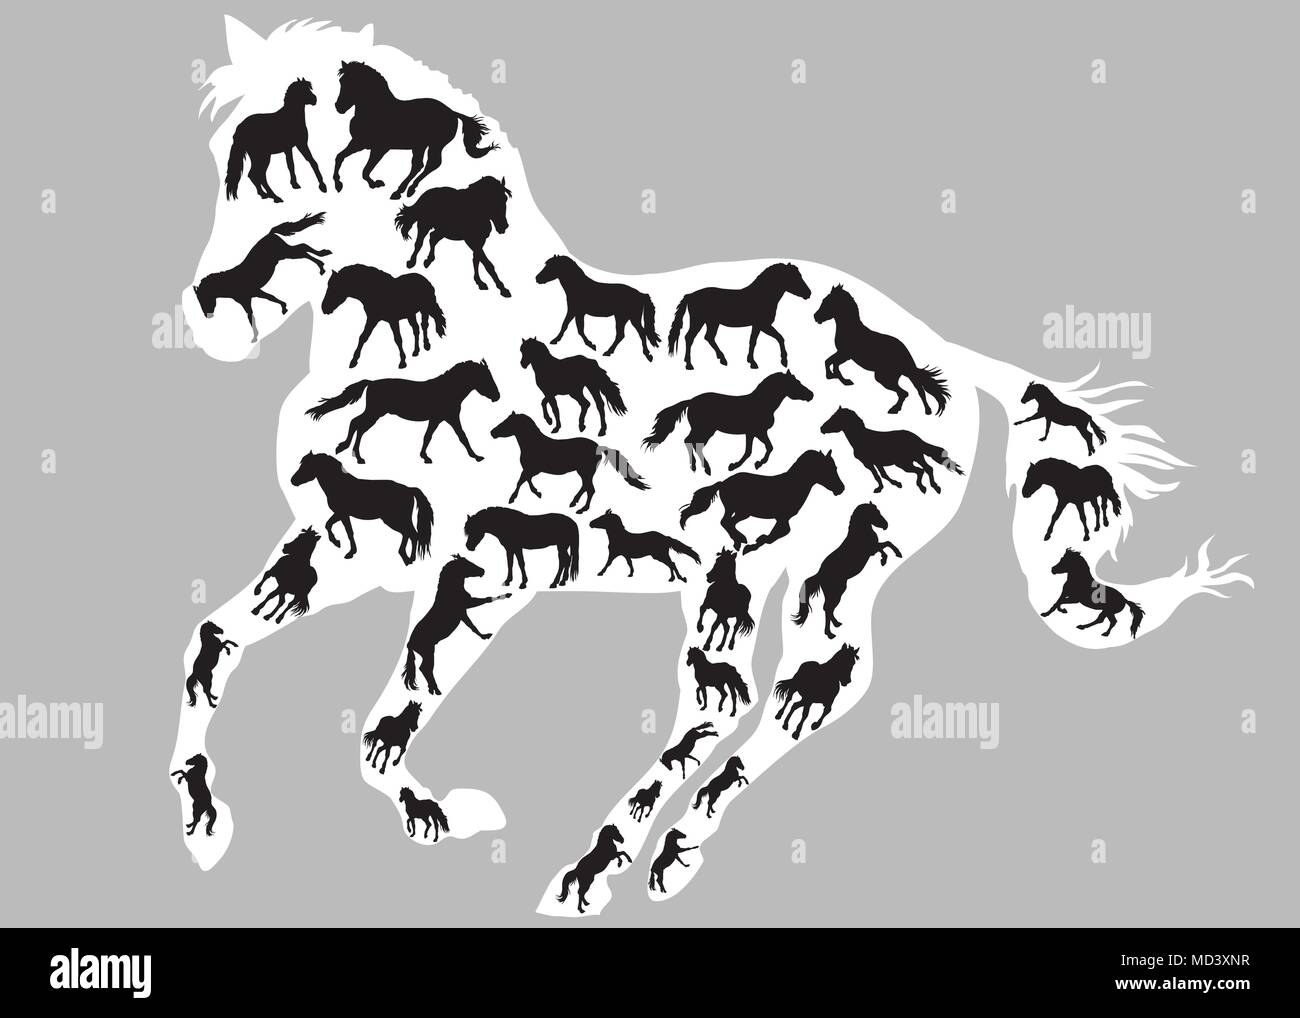 Satz von verschiedenen isolierten Pferde Silhouetten (stehend, Trab und Galopp) in der Farbe Schwarz im grossen Galopp Silhouette von Pferd in Weiß colo Stock Vektor